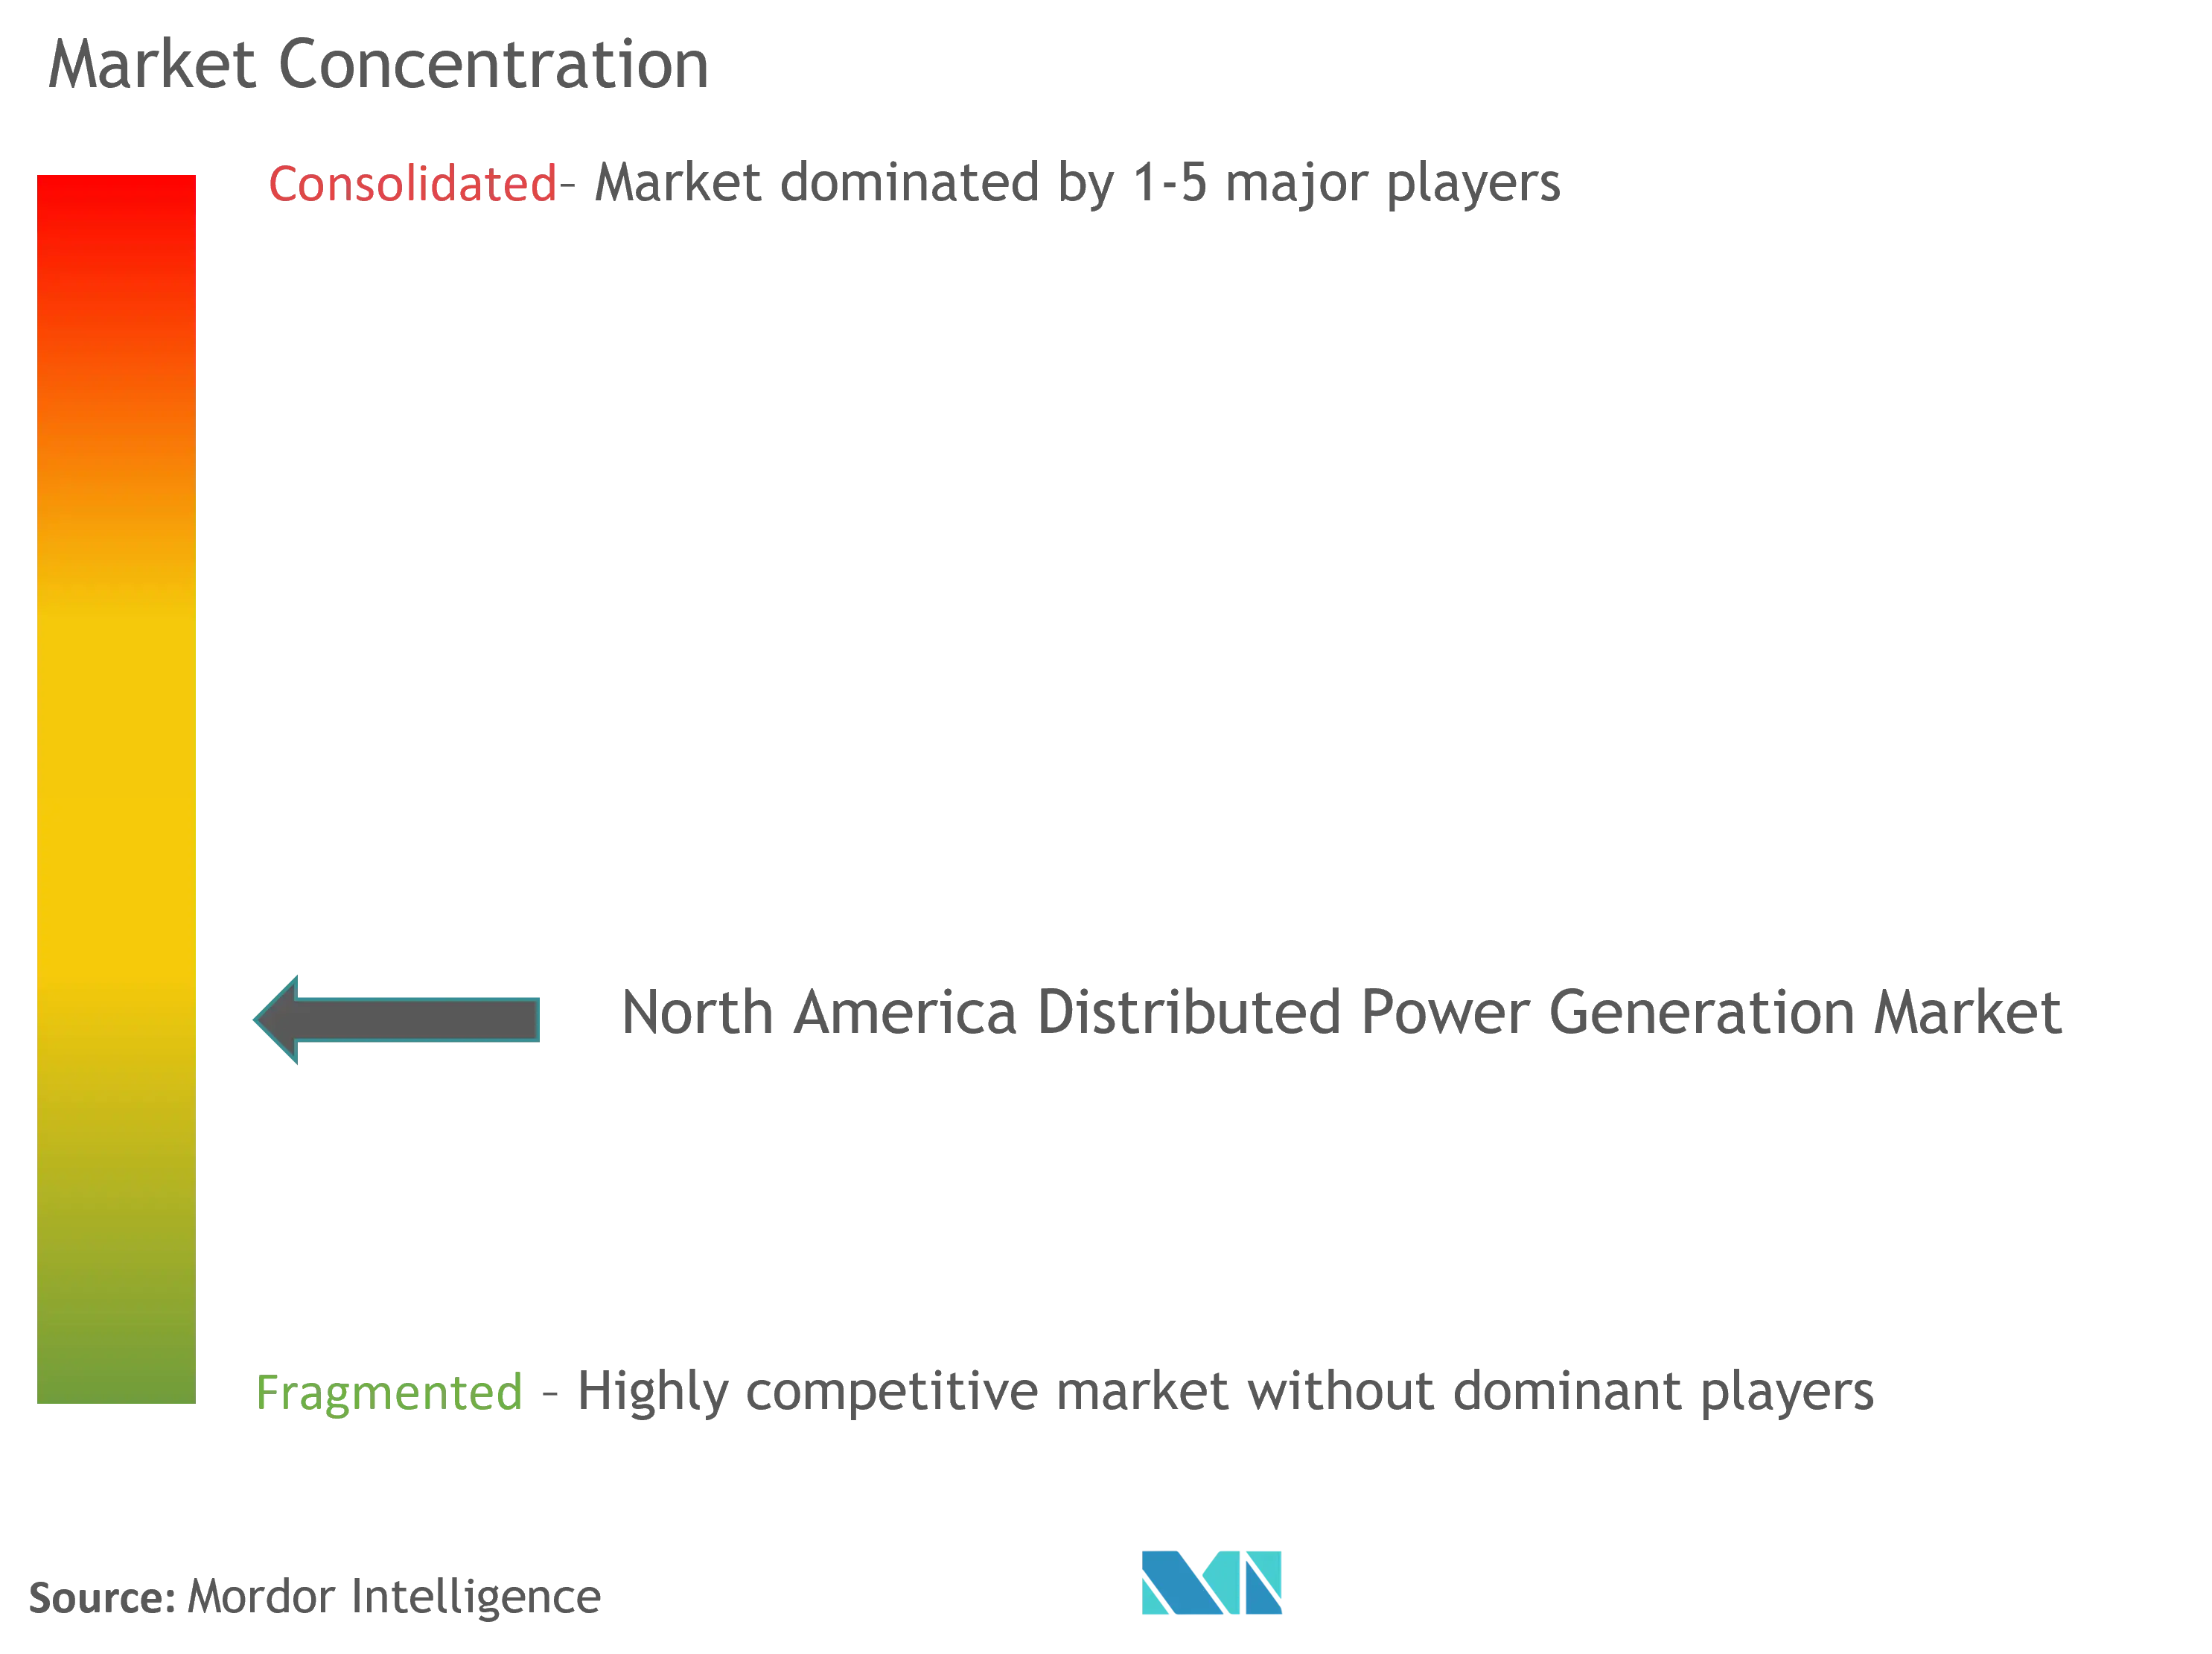 Концентрация рынка распределенной генерации электроэнергии в Северной Америке